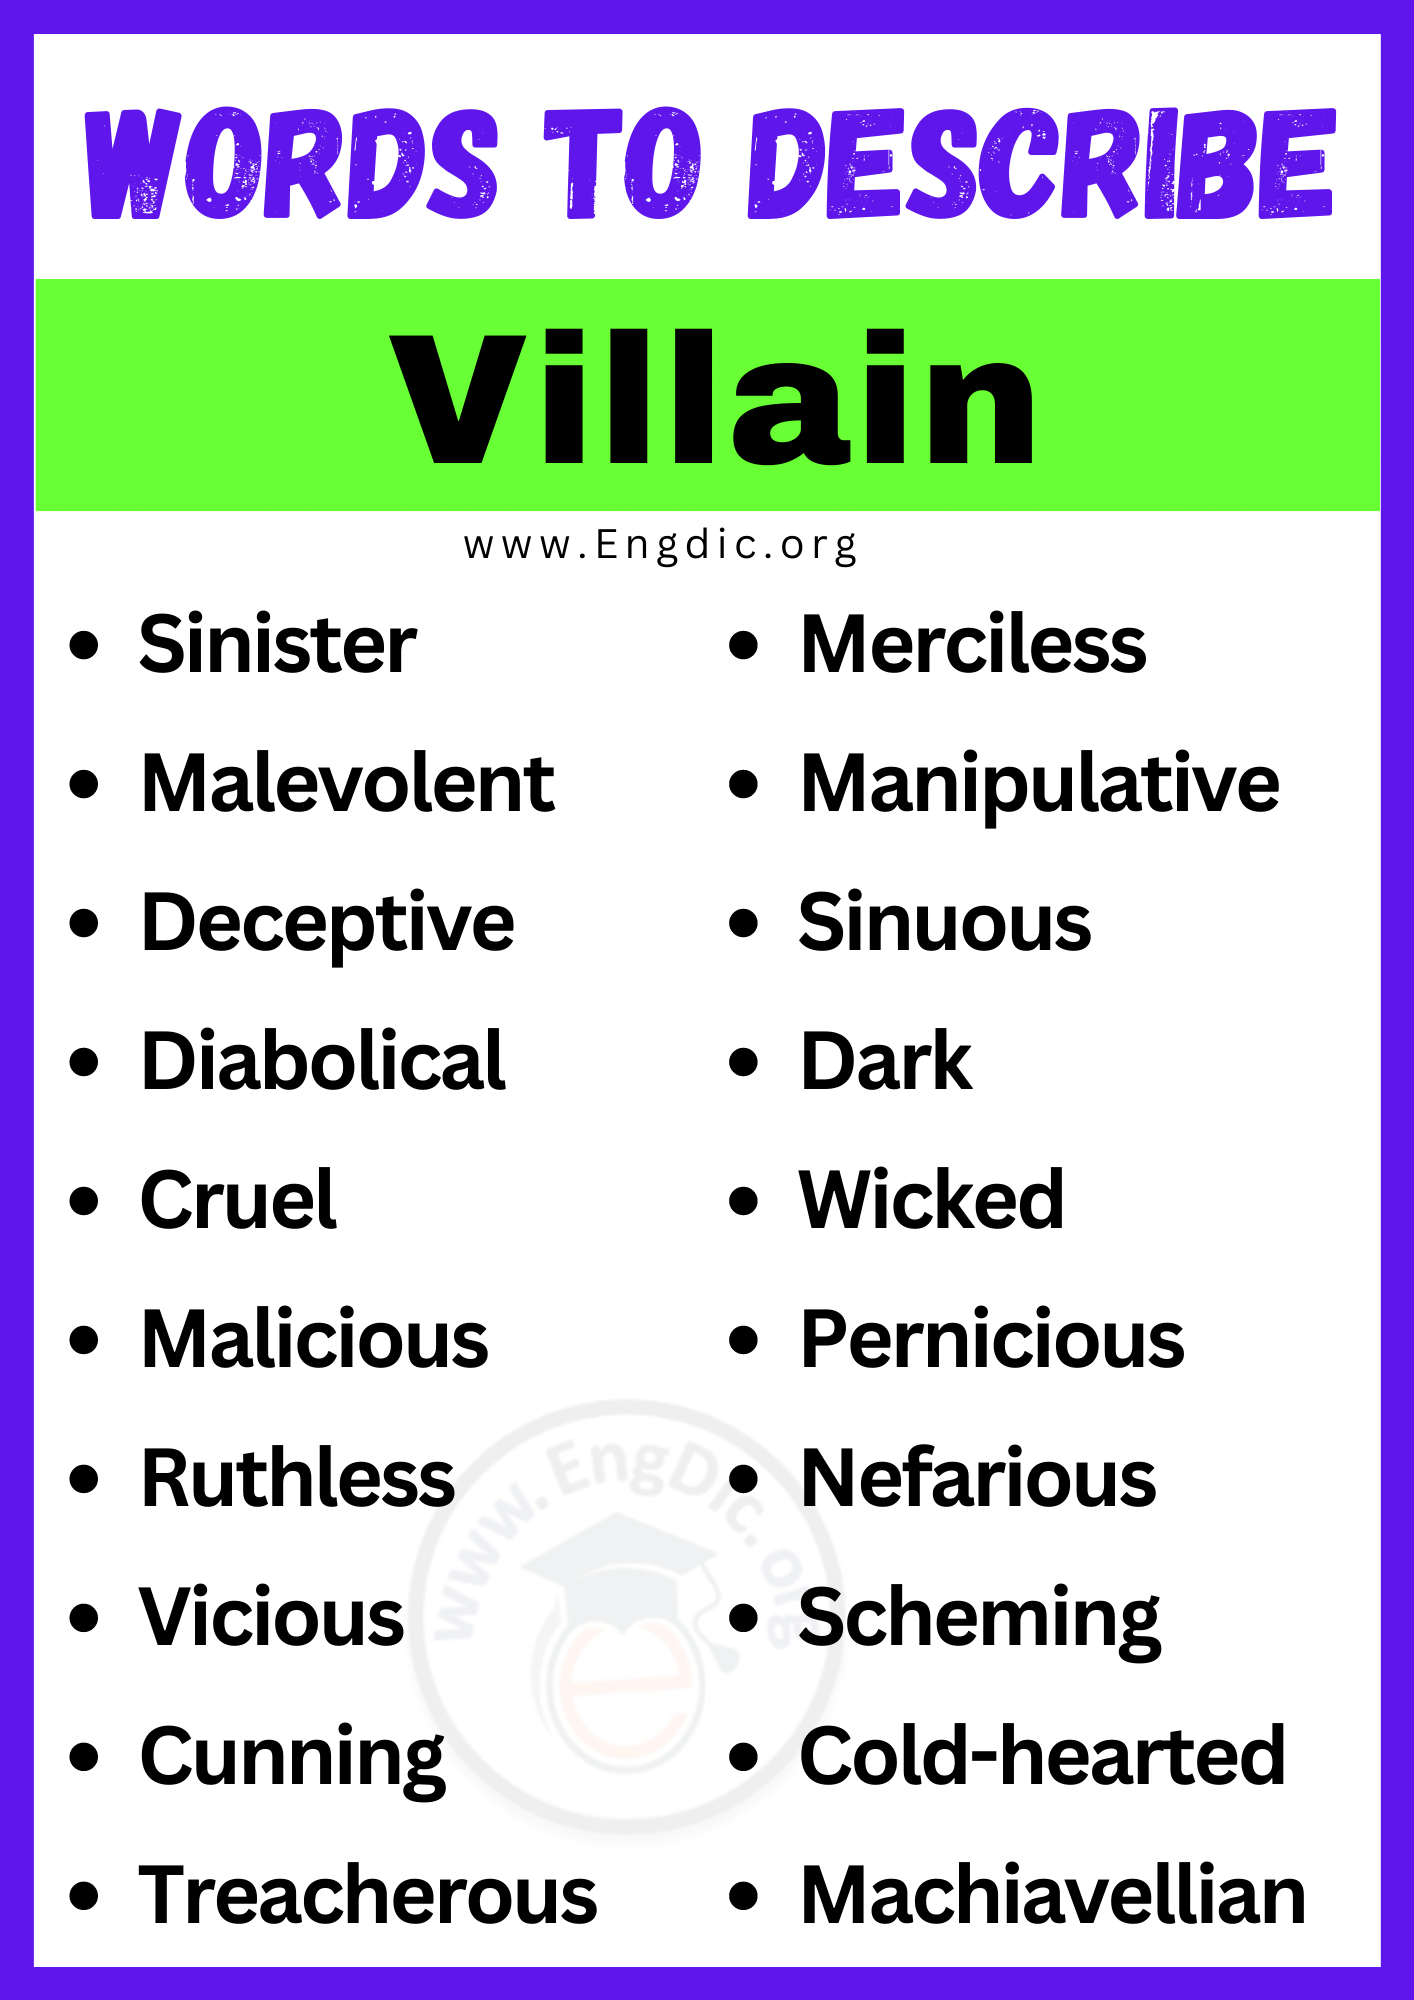 Words to Describe Villain